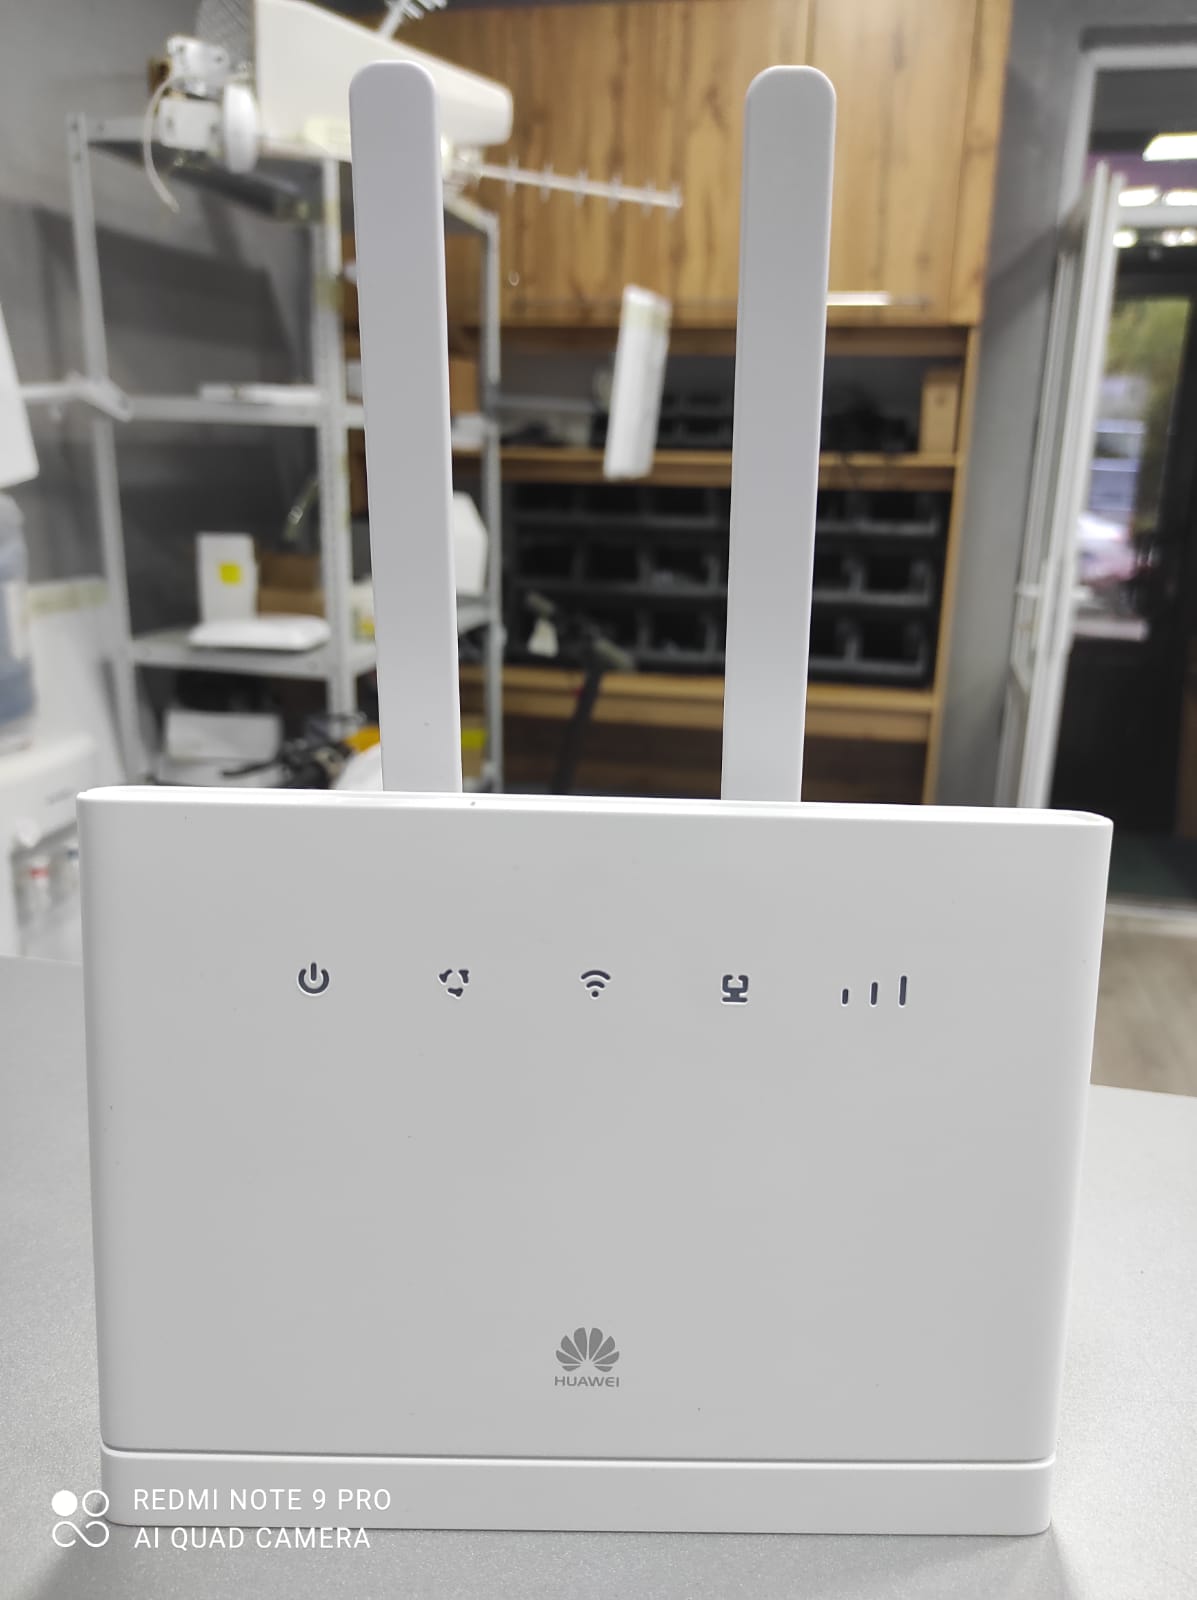 Wi-Fi роутер Huawei B315s-608